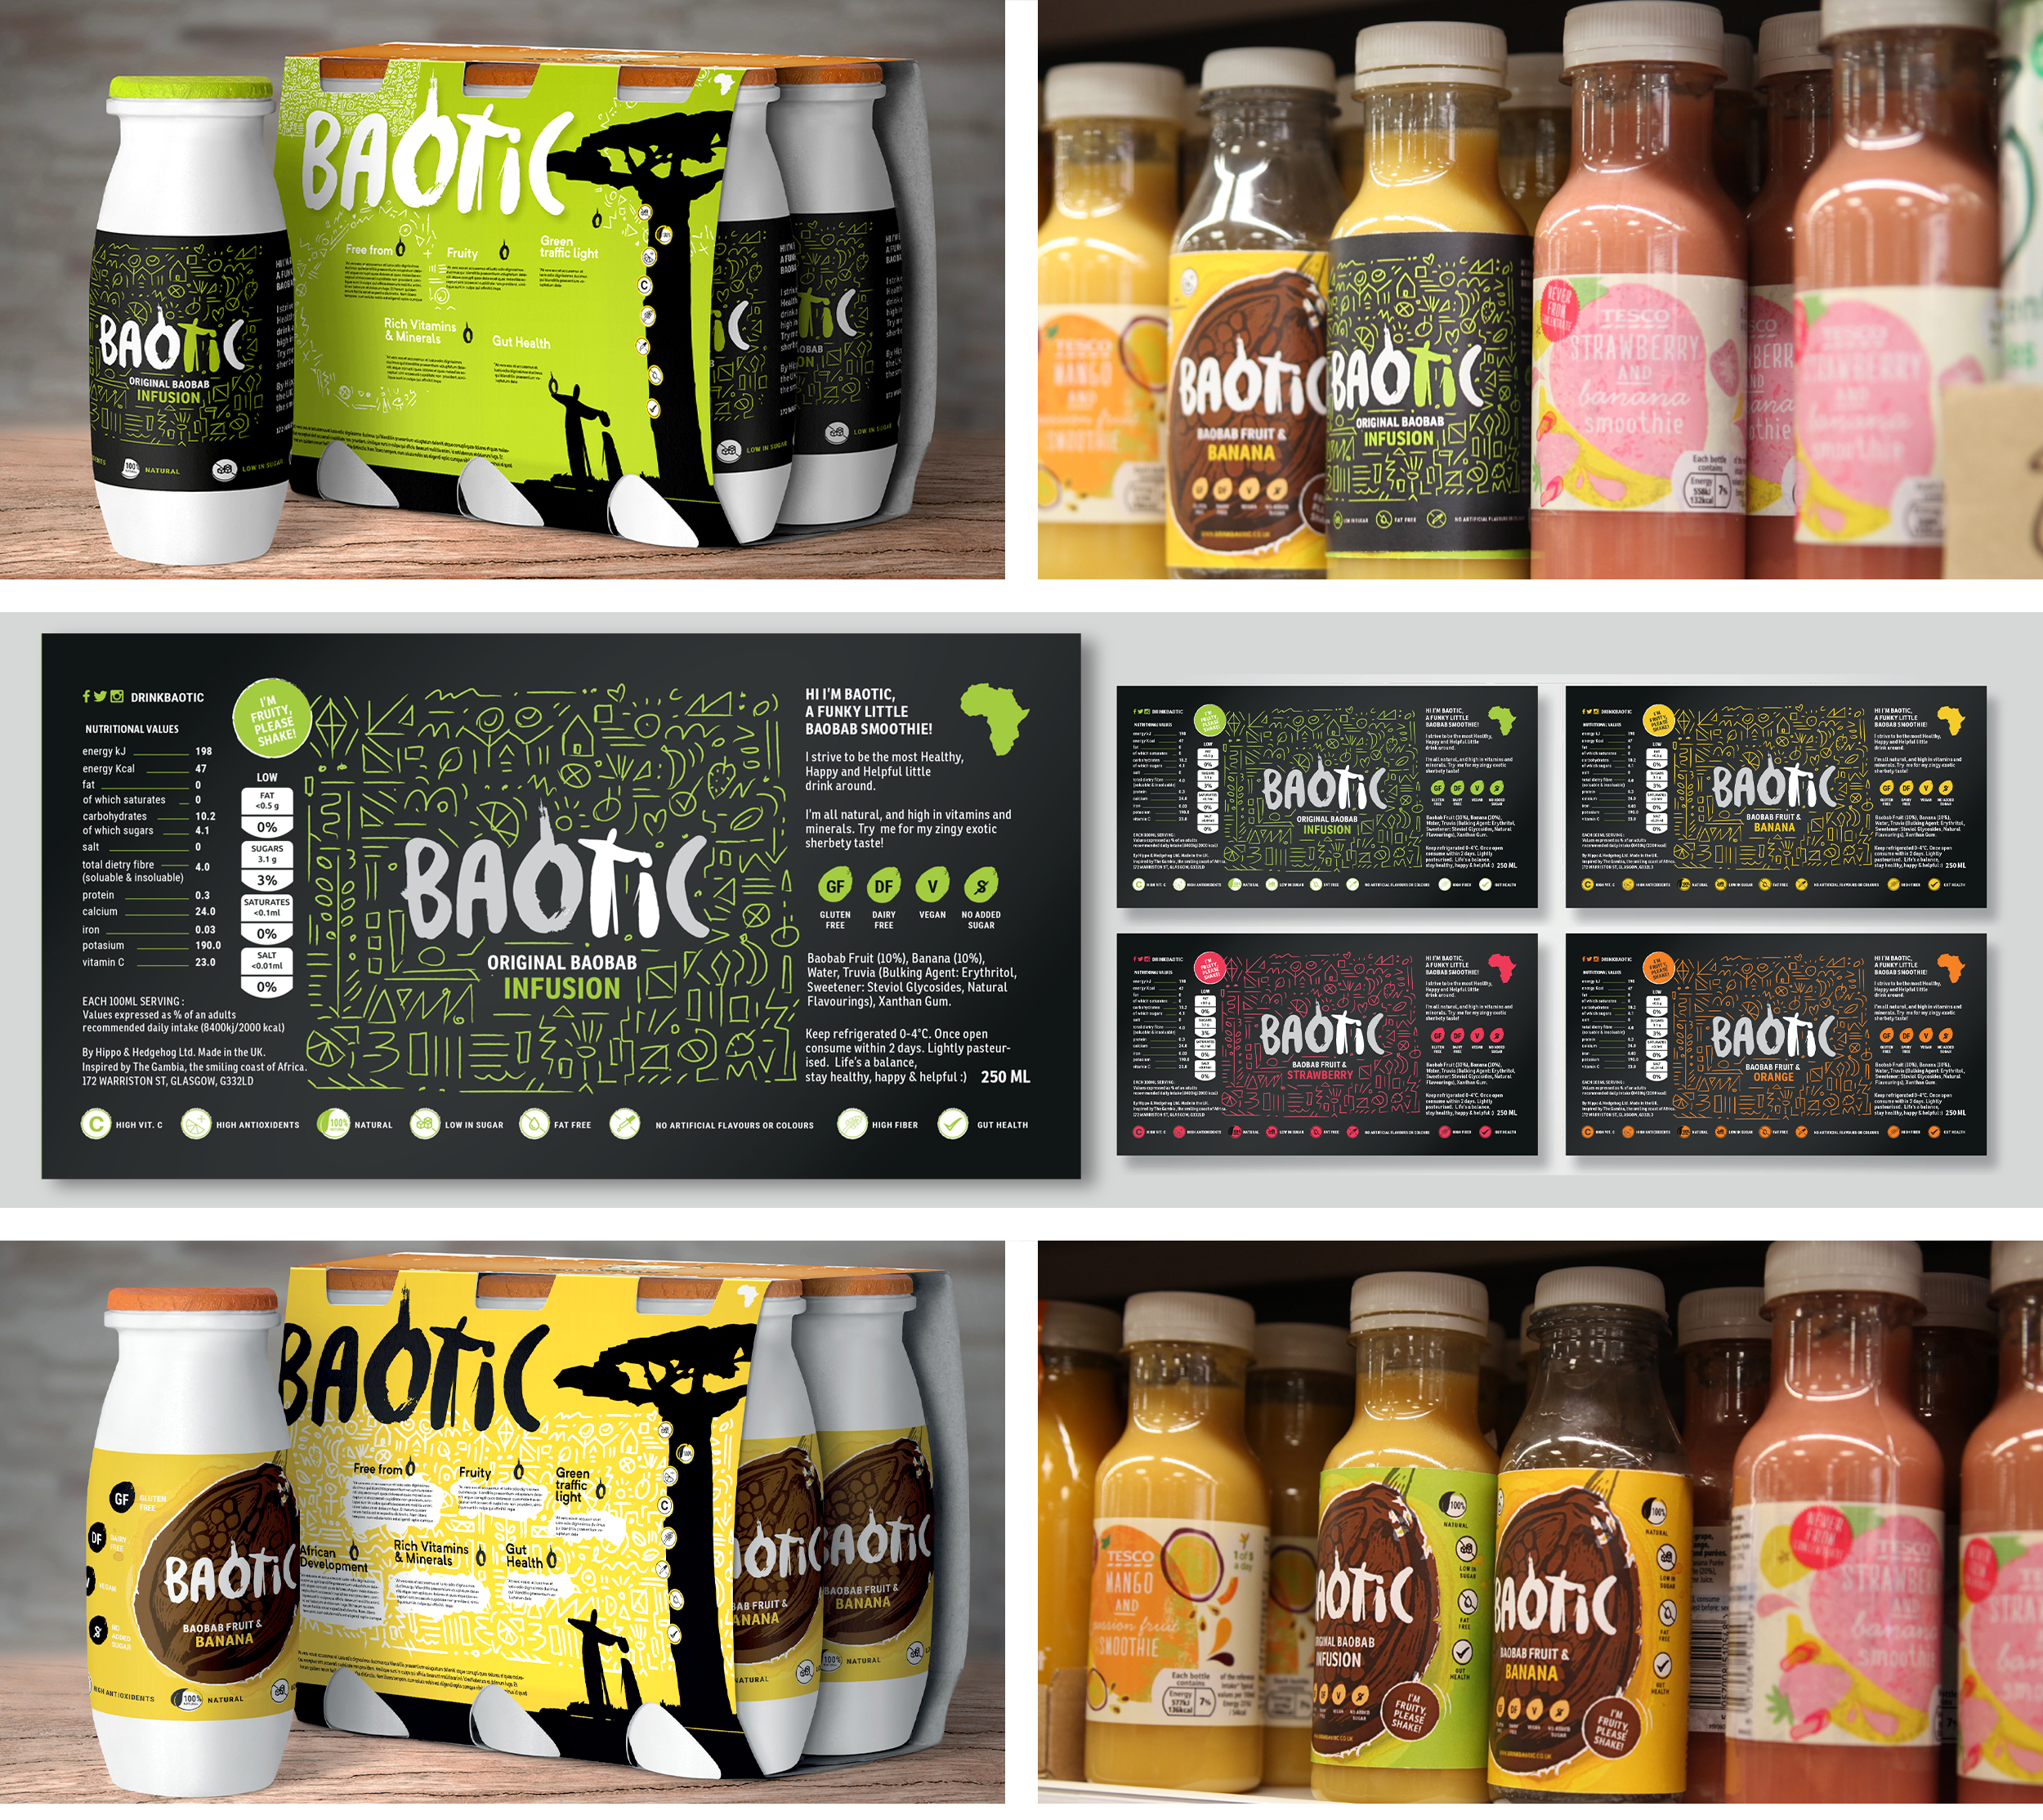  Drink-Baotic, Evocative Packaging Design, Development Images